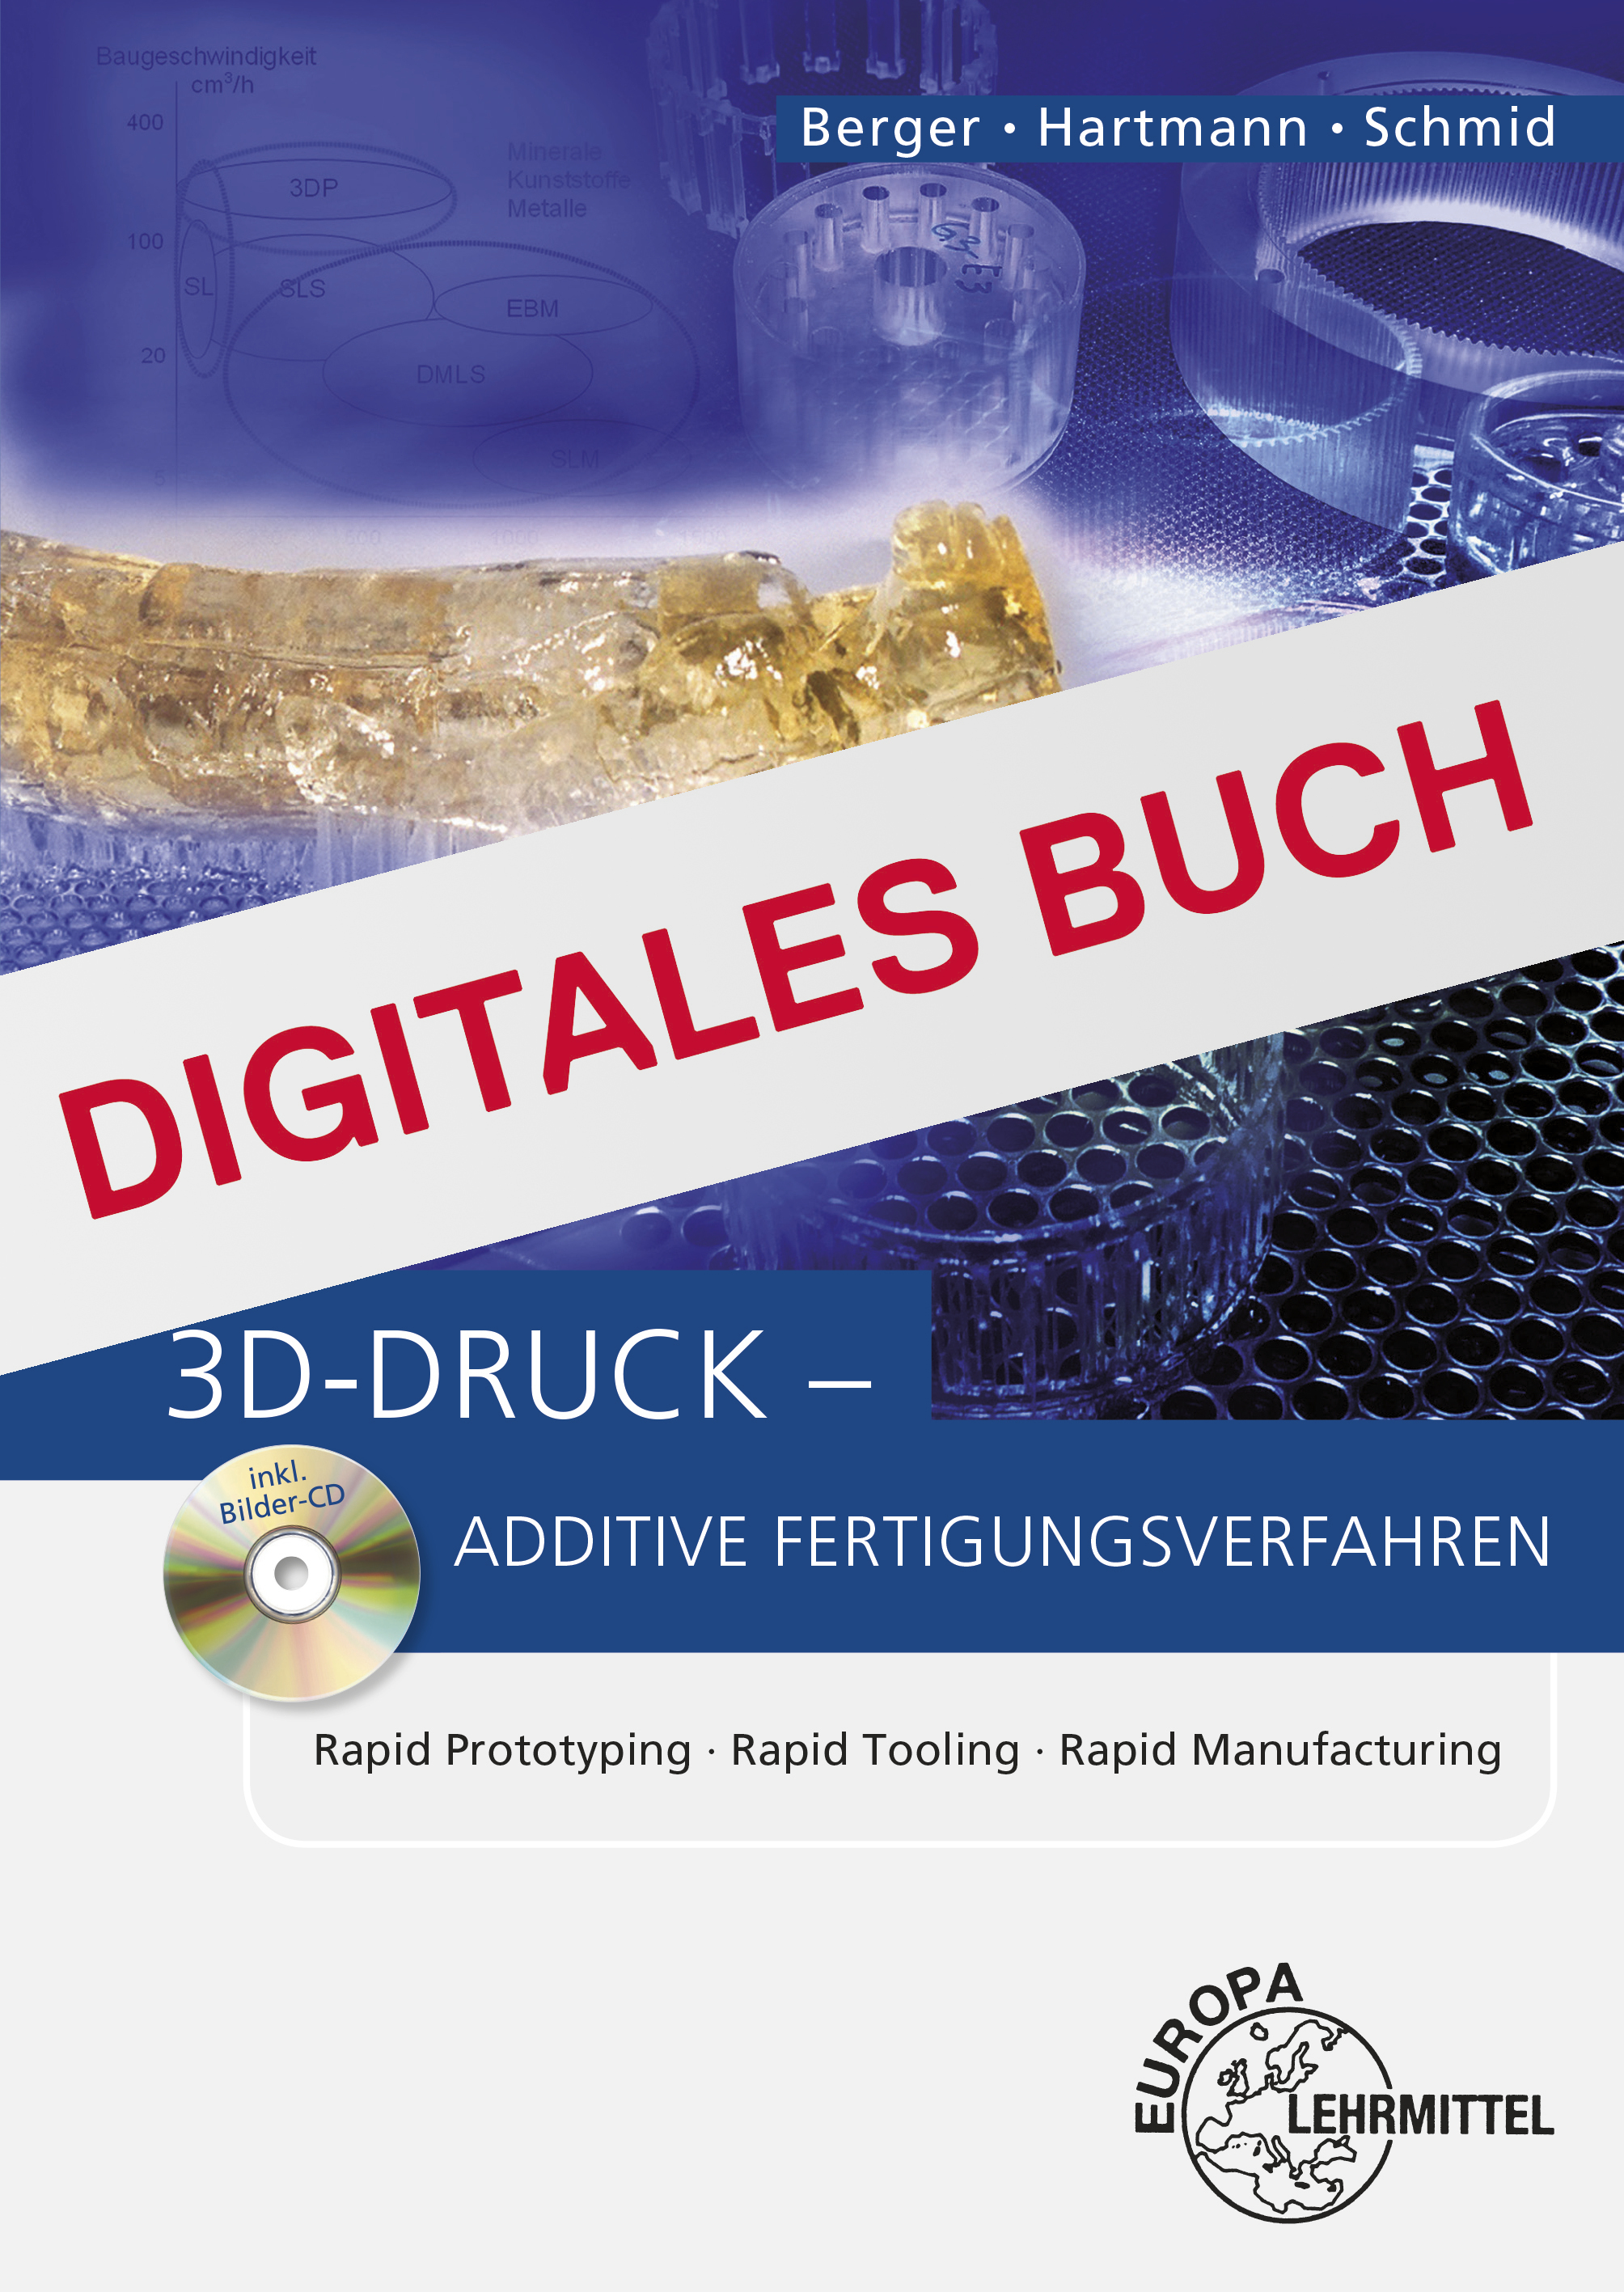 3D-Druck - Additive Fertigungsverfahren - Digitales Buch